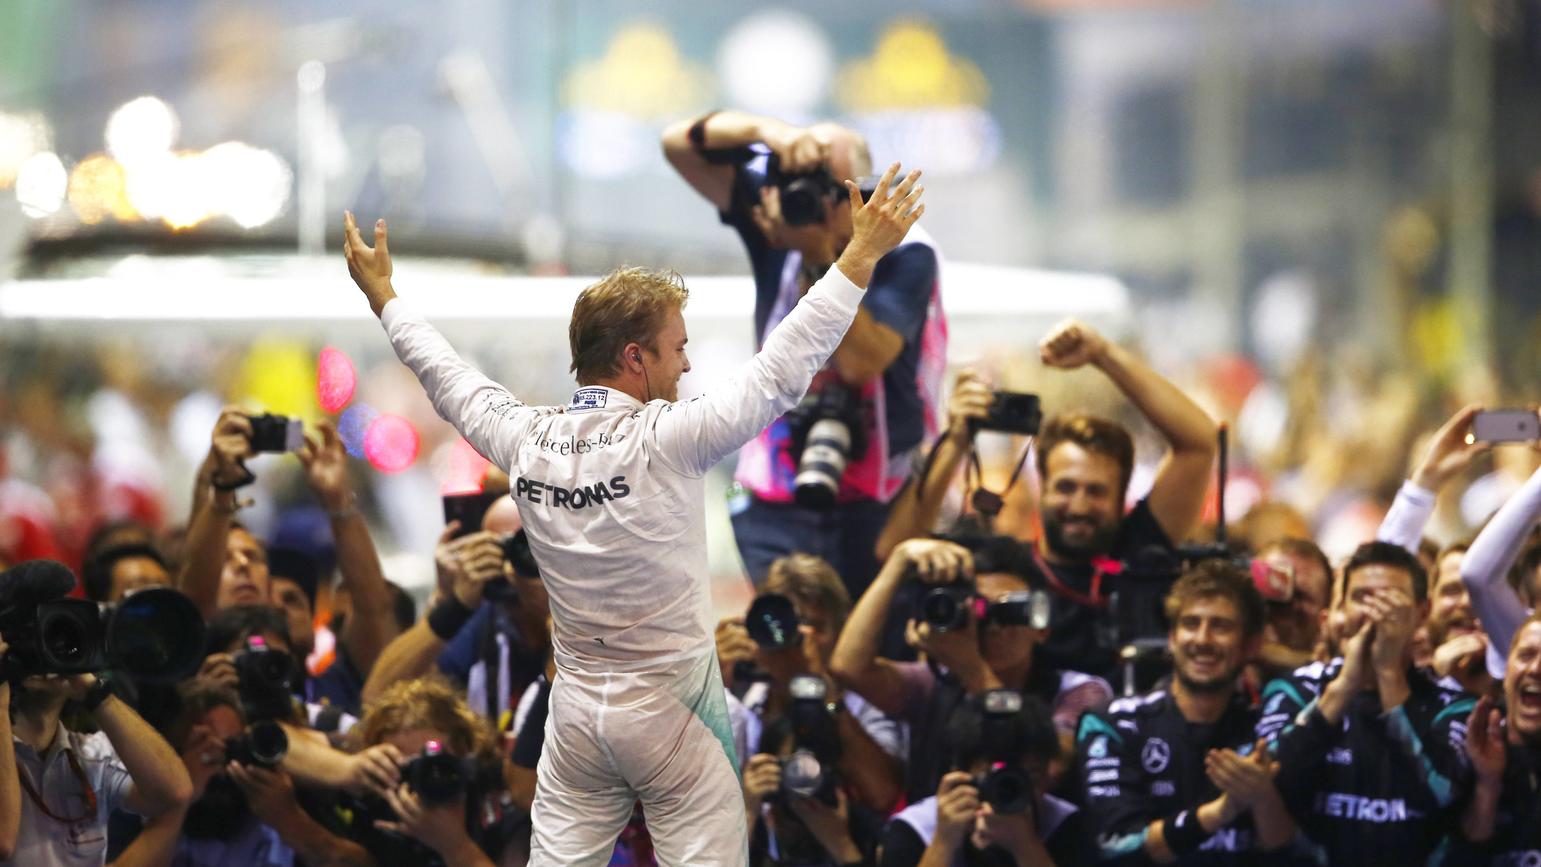 "Die Transformation von Nico Rosberg ist abgeschlossen"